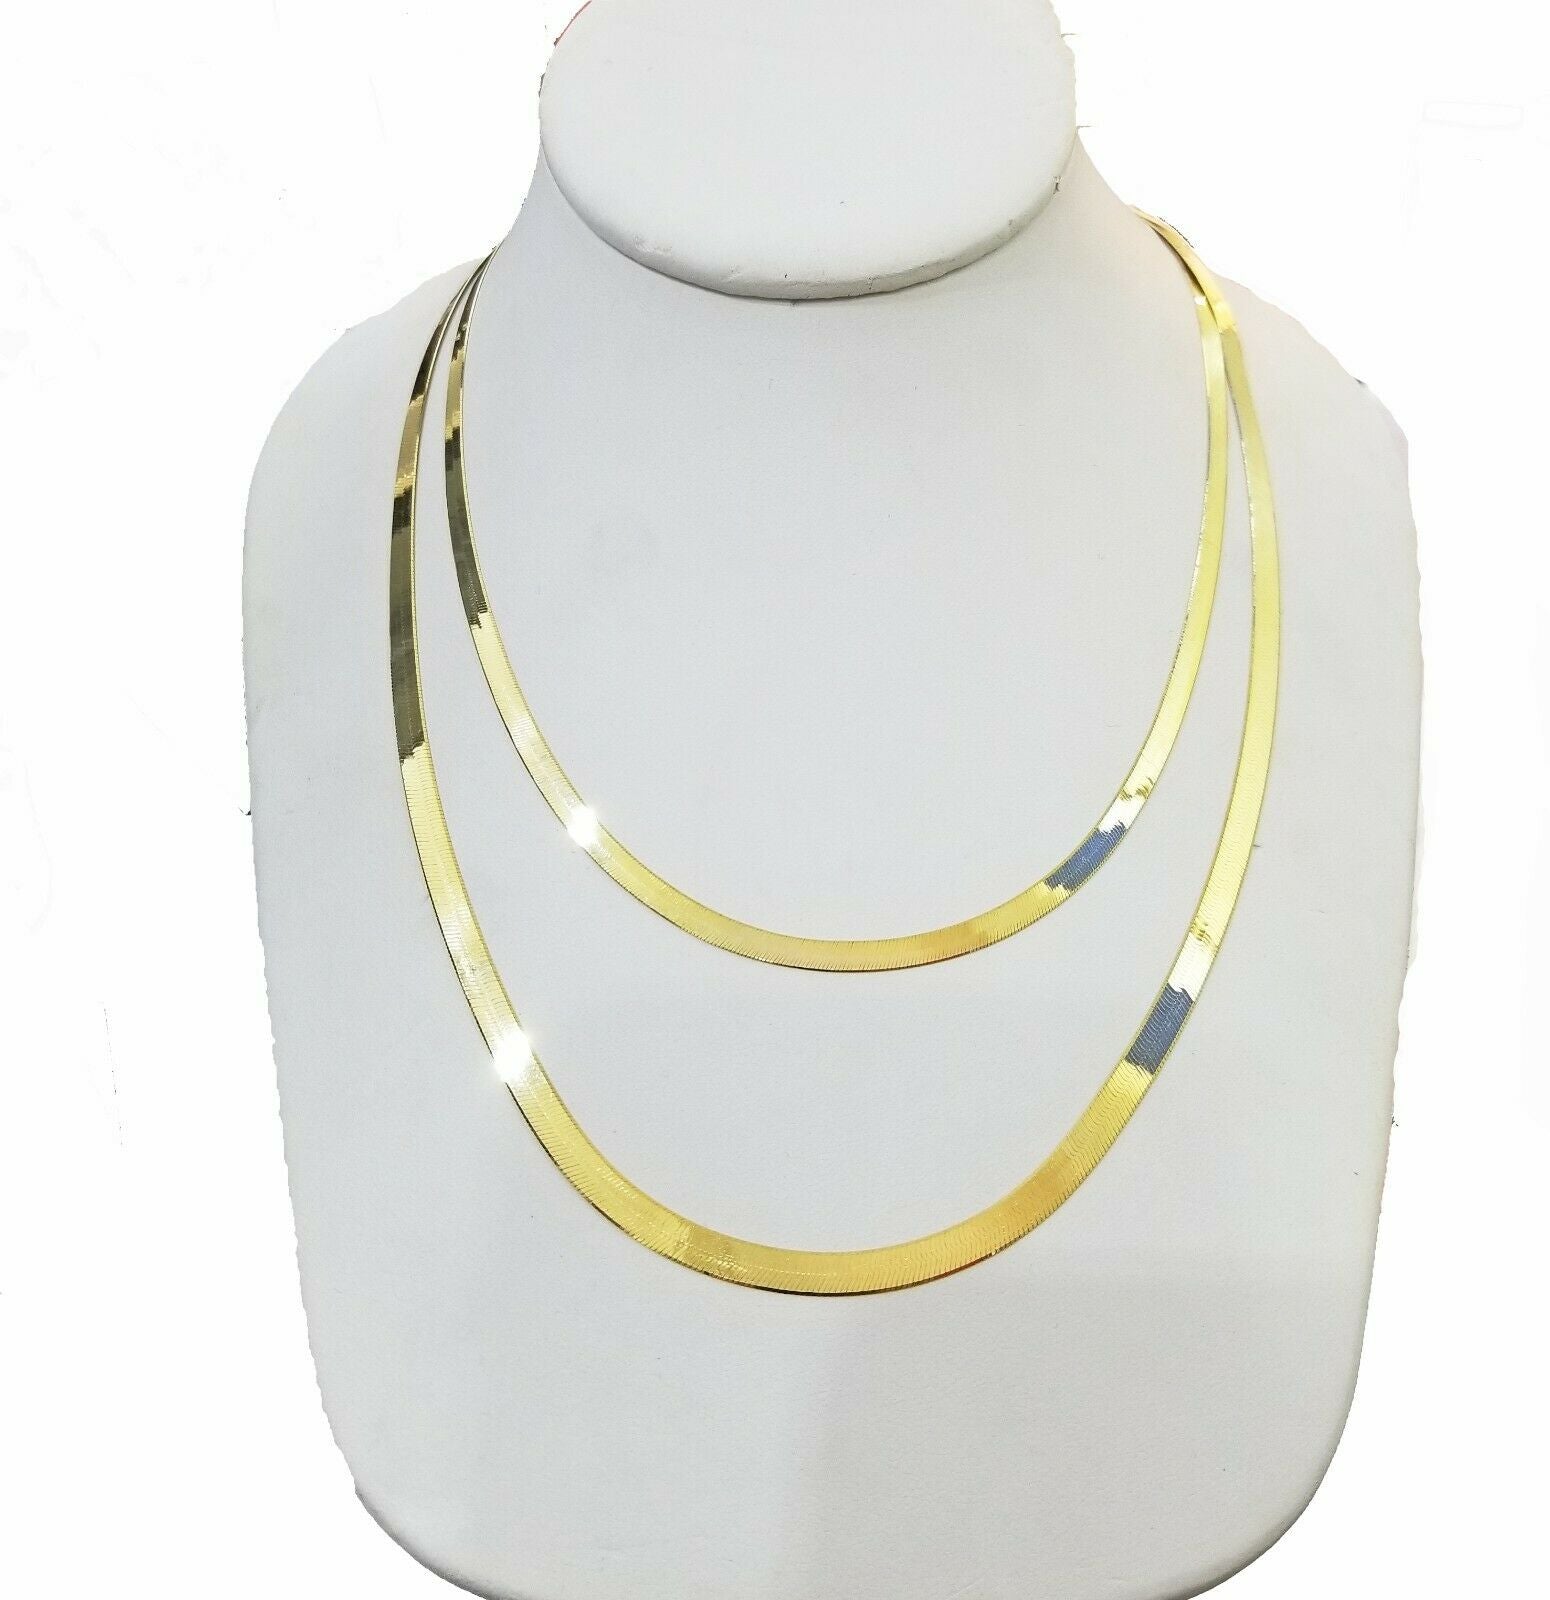 3mm Herringbone Chain Necklace 10k Yellow Gold 18